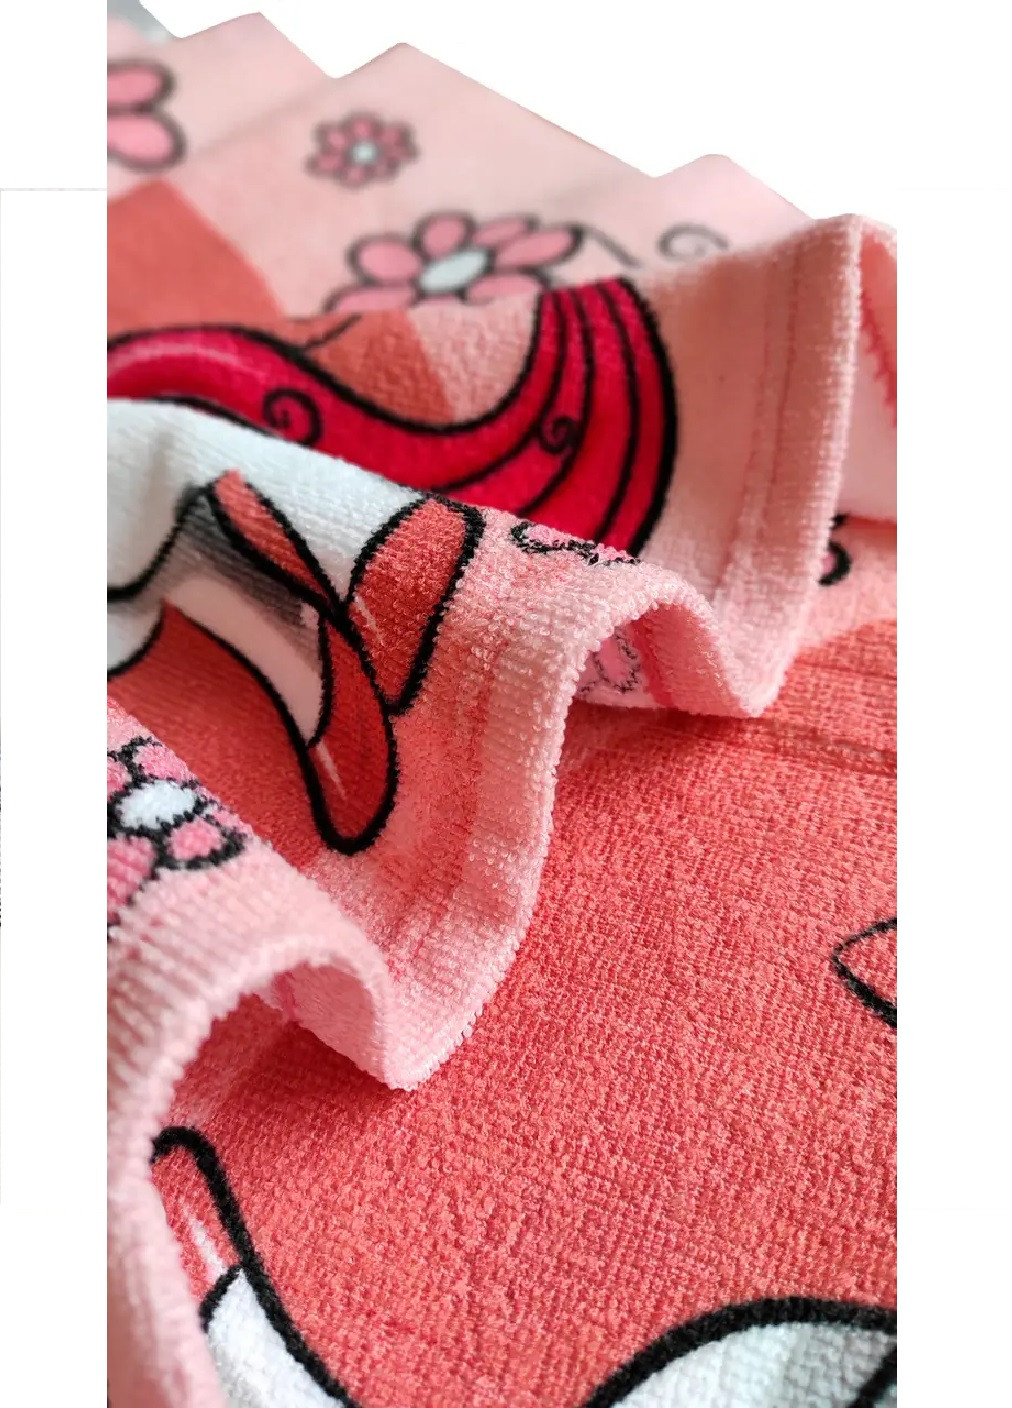 Unbranded детское пляжное полотенце пончо с капюшоном микрофибра для ванной бассейна пляжа 60х60 см (474678-prob) единорог рисунок розовый производство -